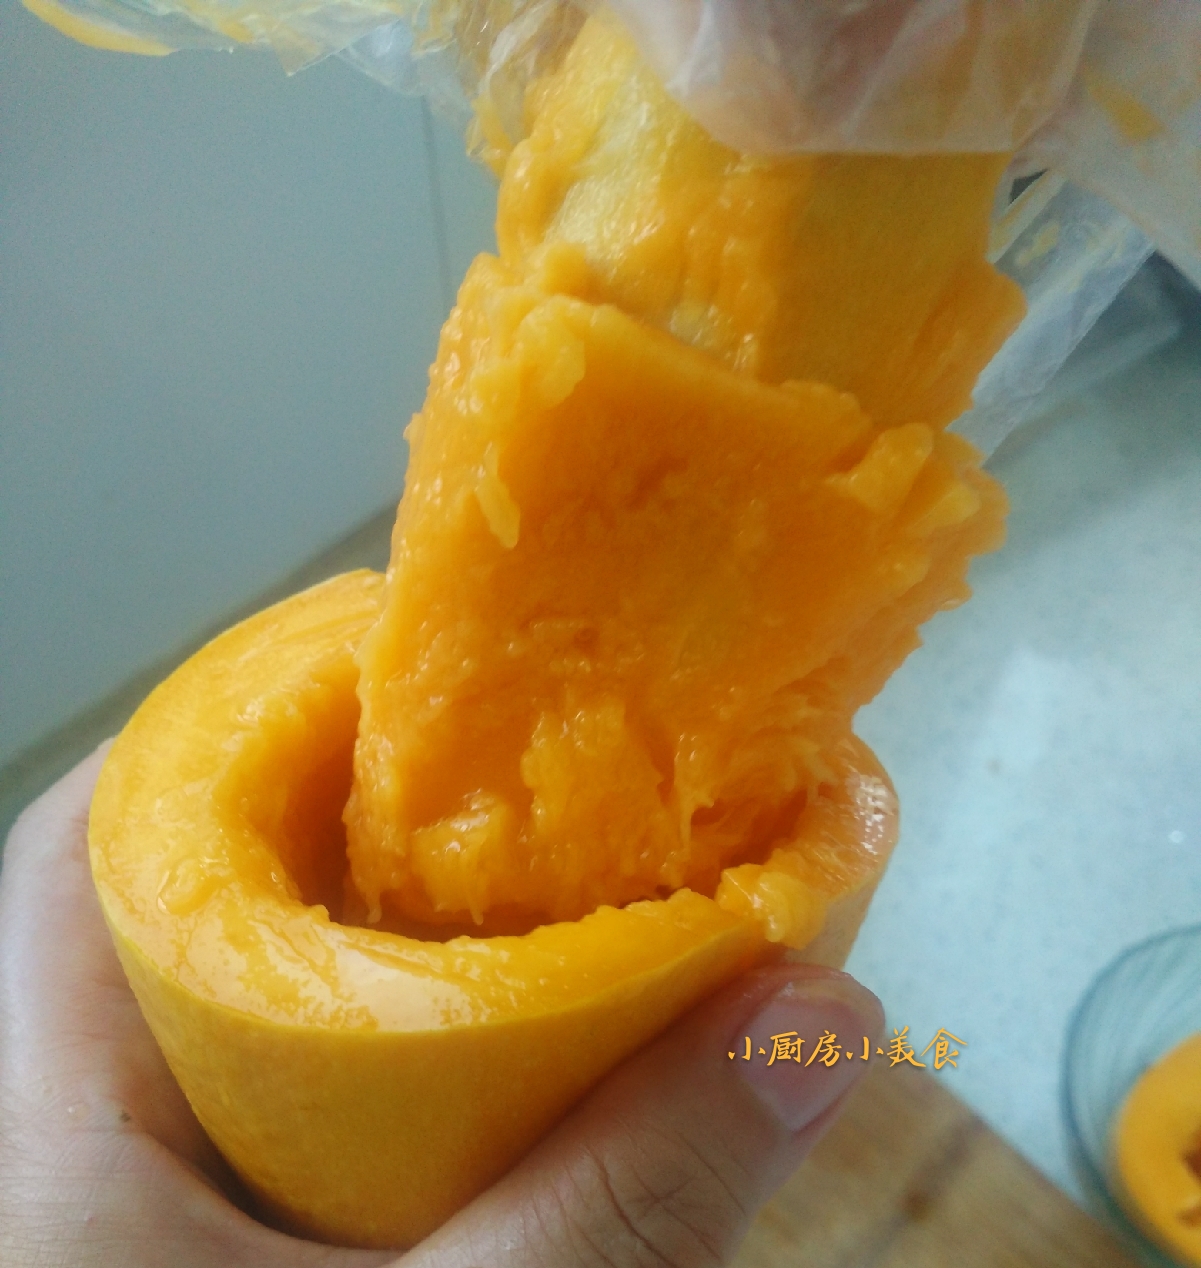 芒果怎么切方便吃(芒果的几种切法图解)